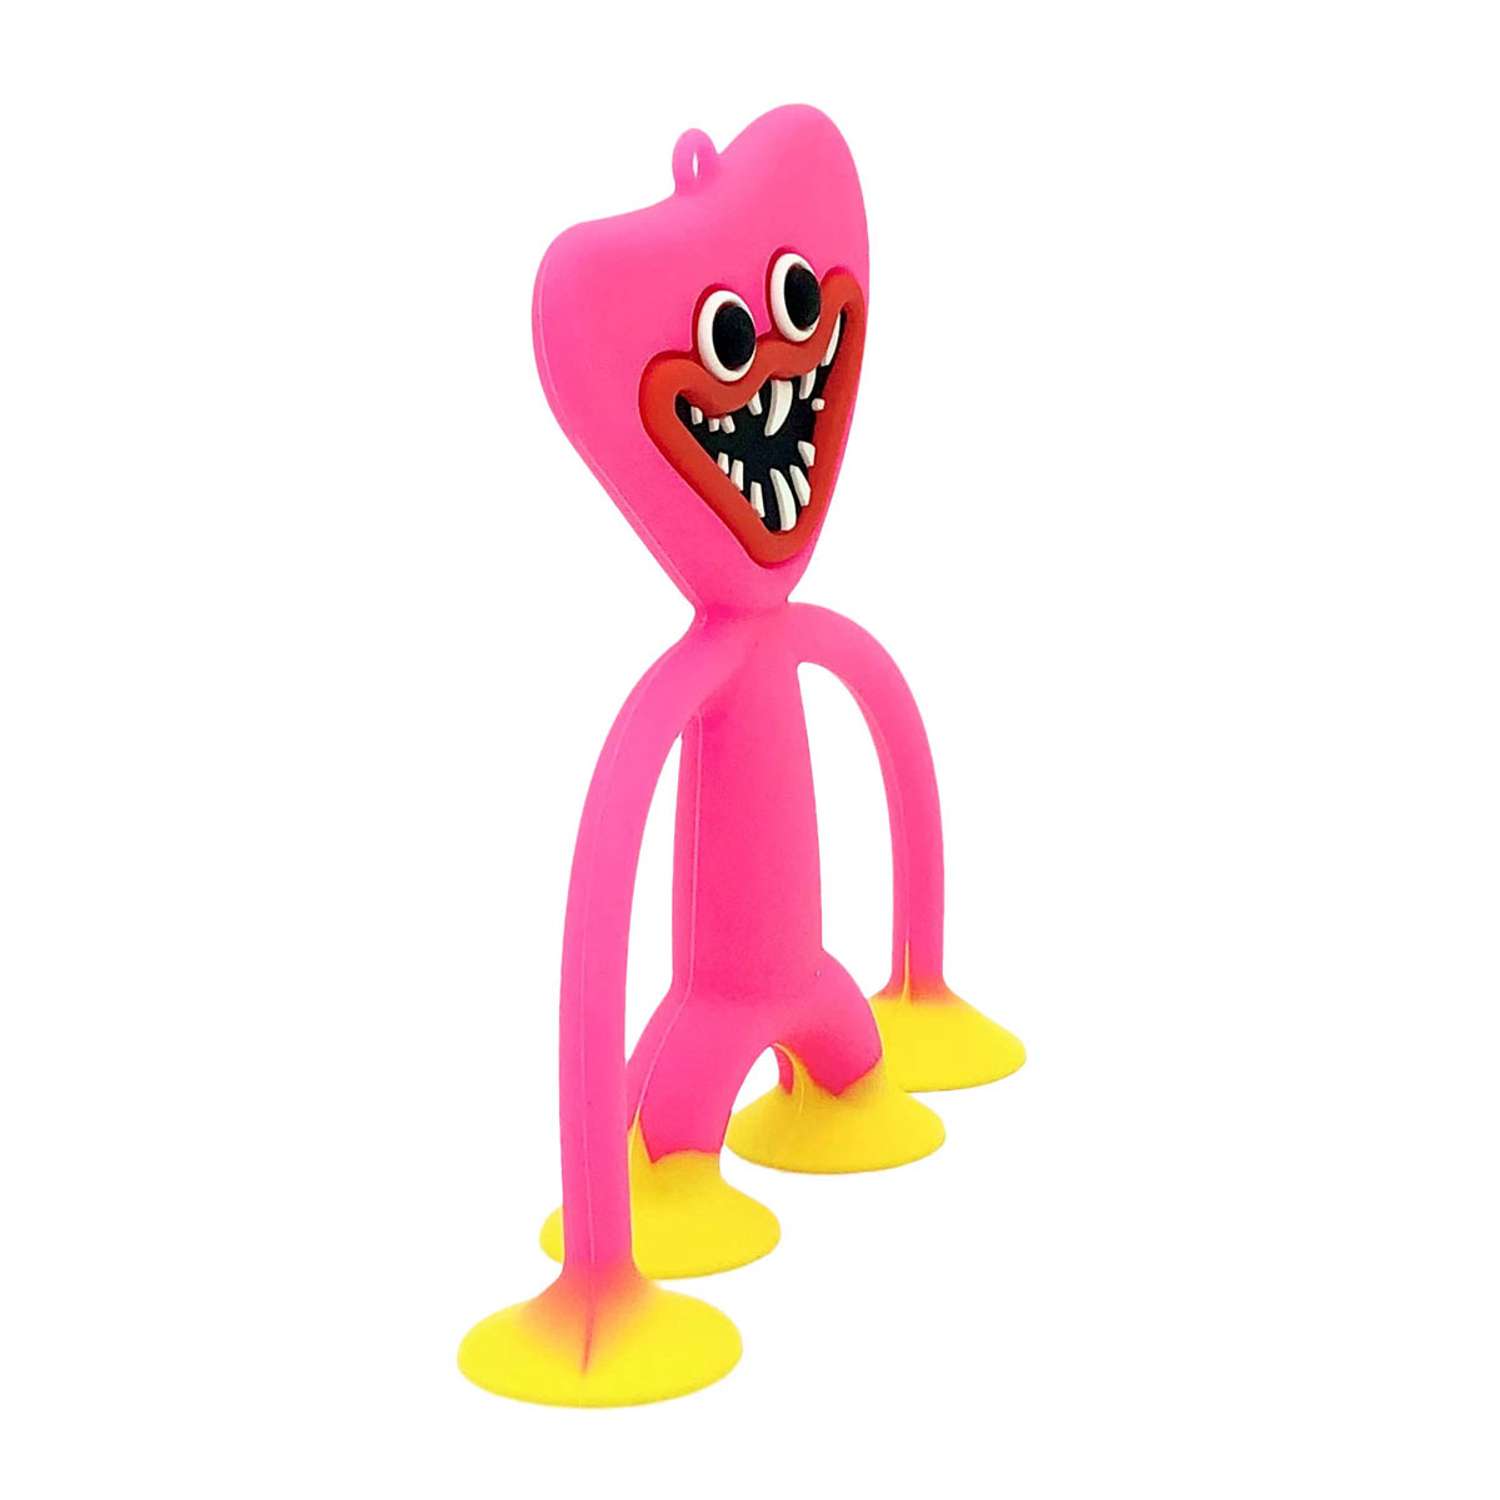 Брелок Михи-Михи подвеска Huggy Wuggy Kissy Missy с присосками розовый - фото 2